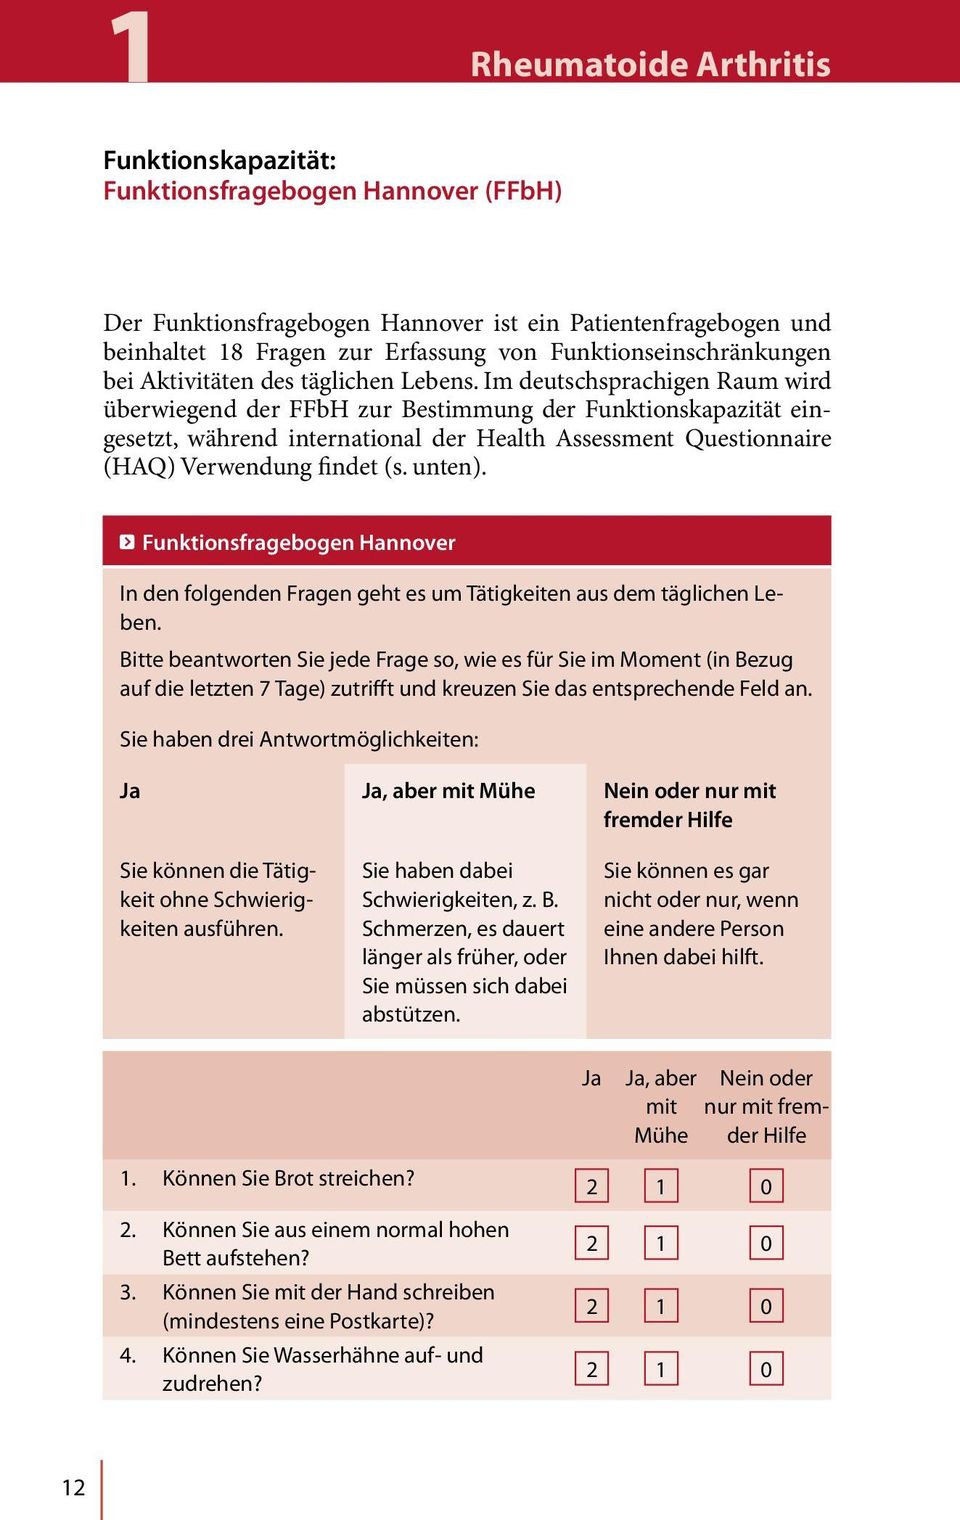 Im deutschsprachigen Raum wird überwiegend der FFbH zur Bestimmung der Funktionskapazität eingesetzt, während international der Health Assessment Questionnaire (HAQ) Verwendung findet (s. unten).